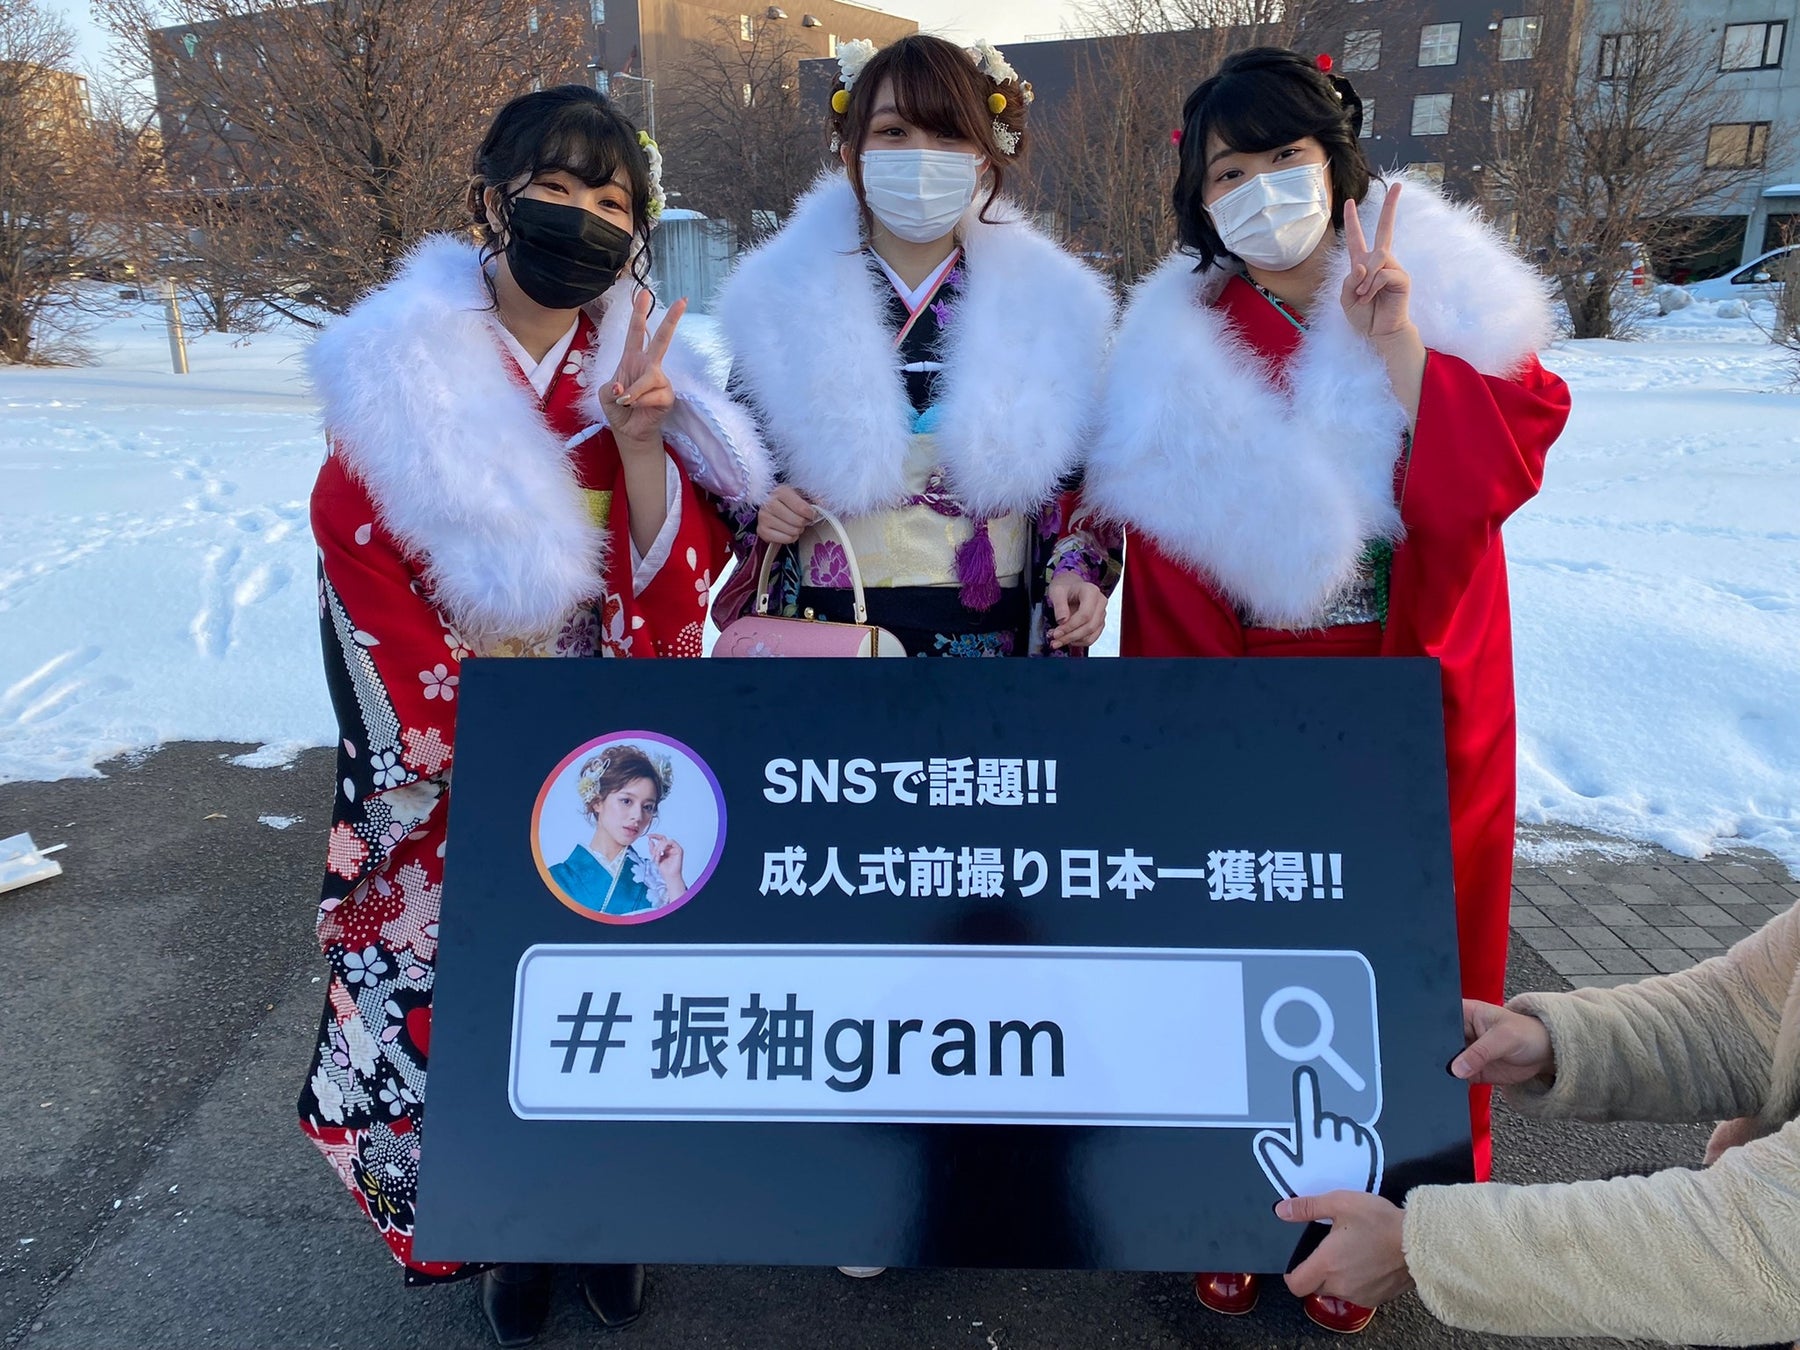 地元白石区の新成人の笑顔を残したい『#振袖gram』北海道札幌市白石区振袖記念写真プロジェクト企画のサブ画像6